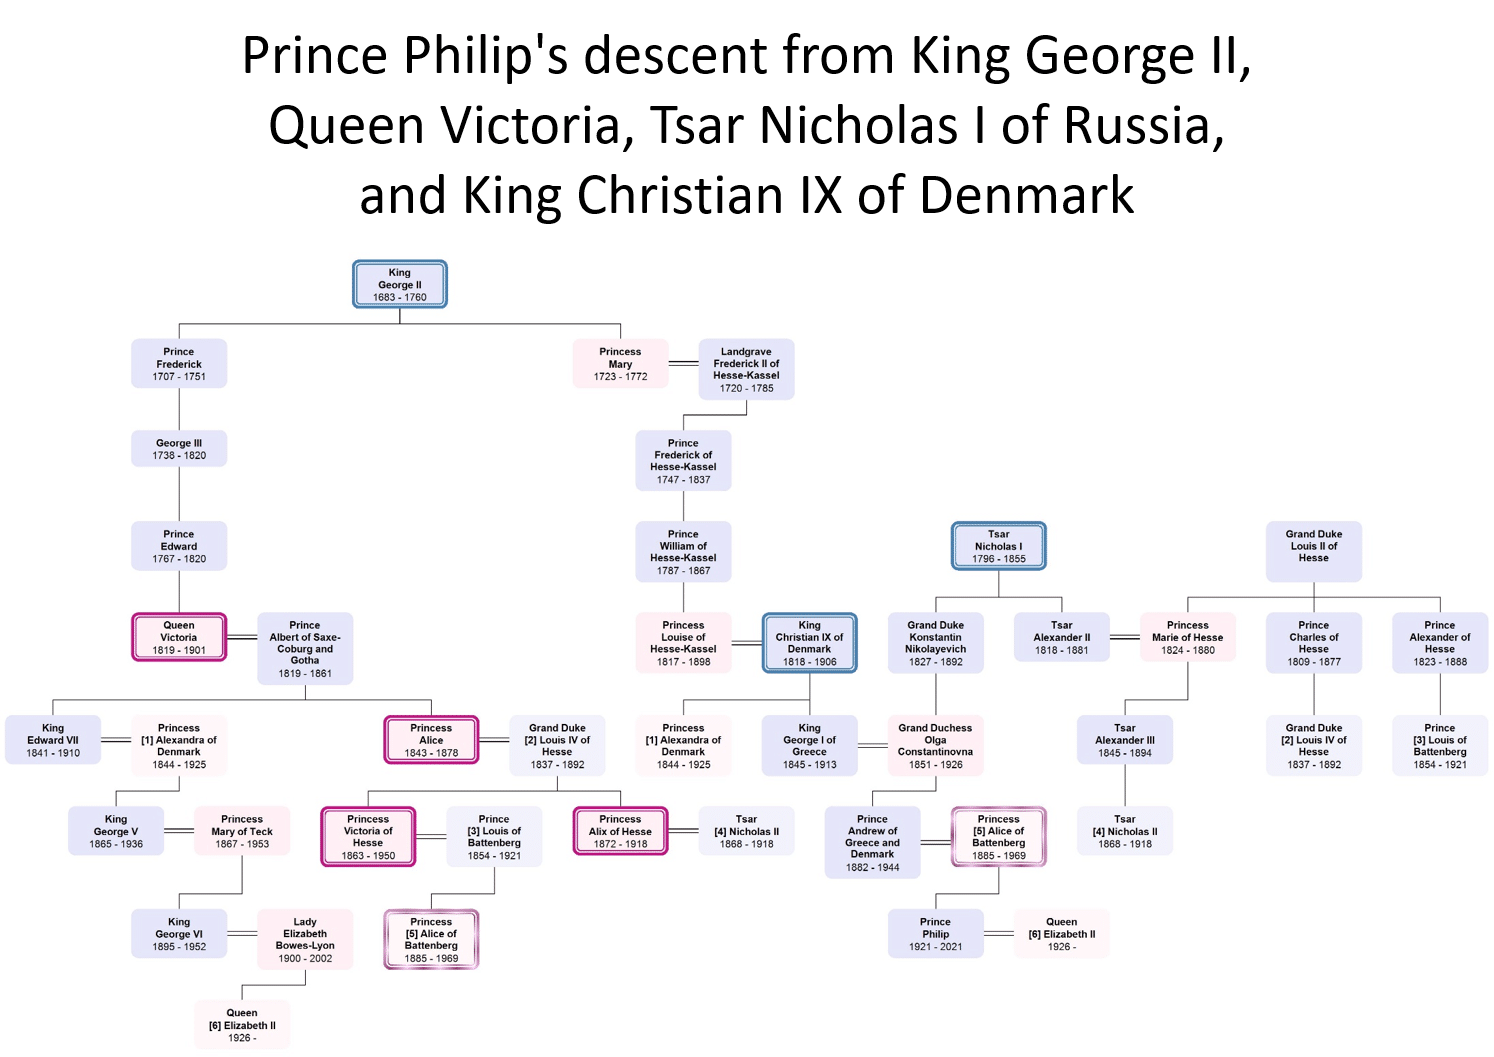 Carolines presentasjon illustrerer prins Philips kongelige familieforbindelser